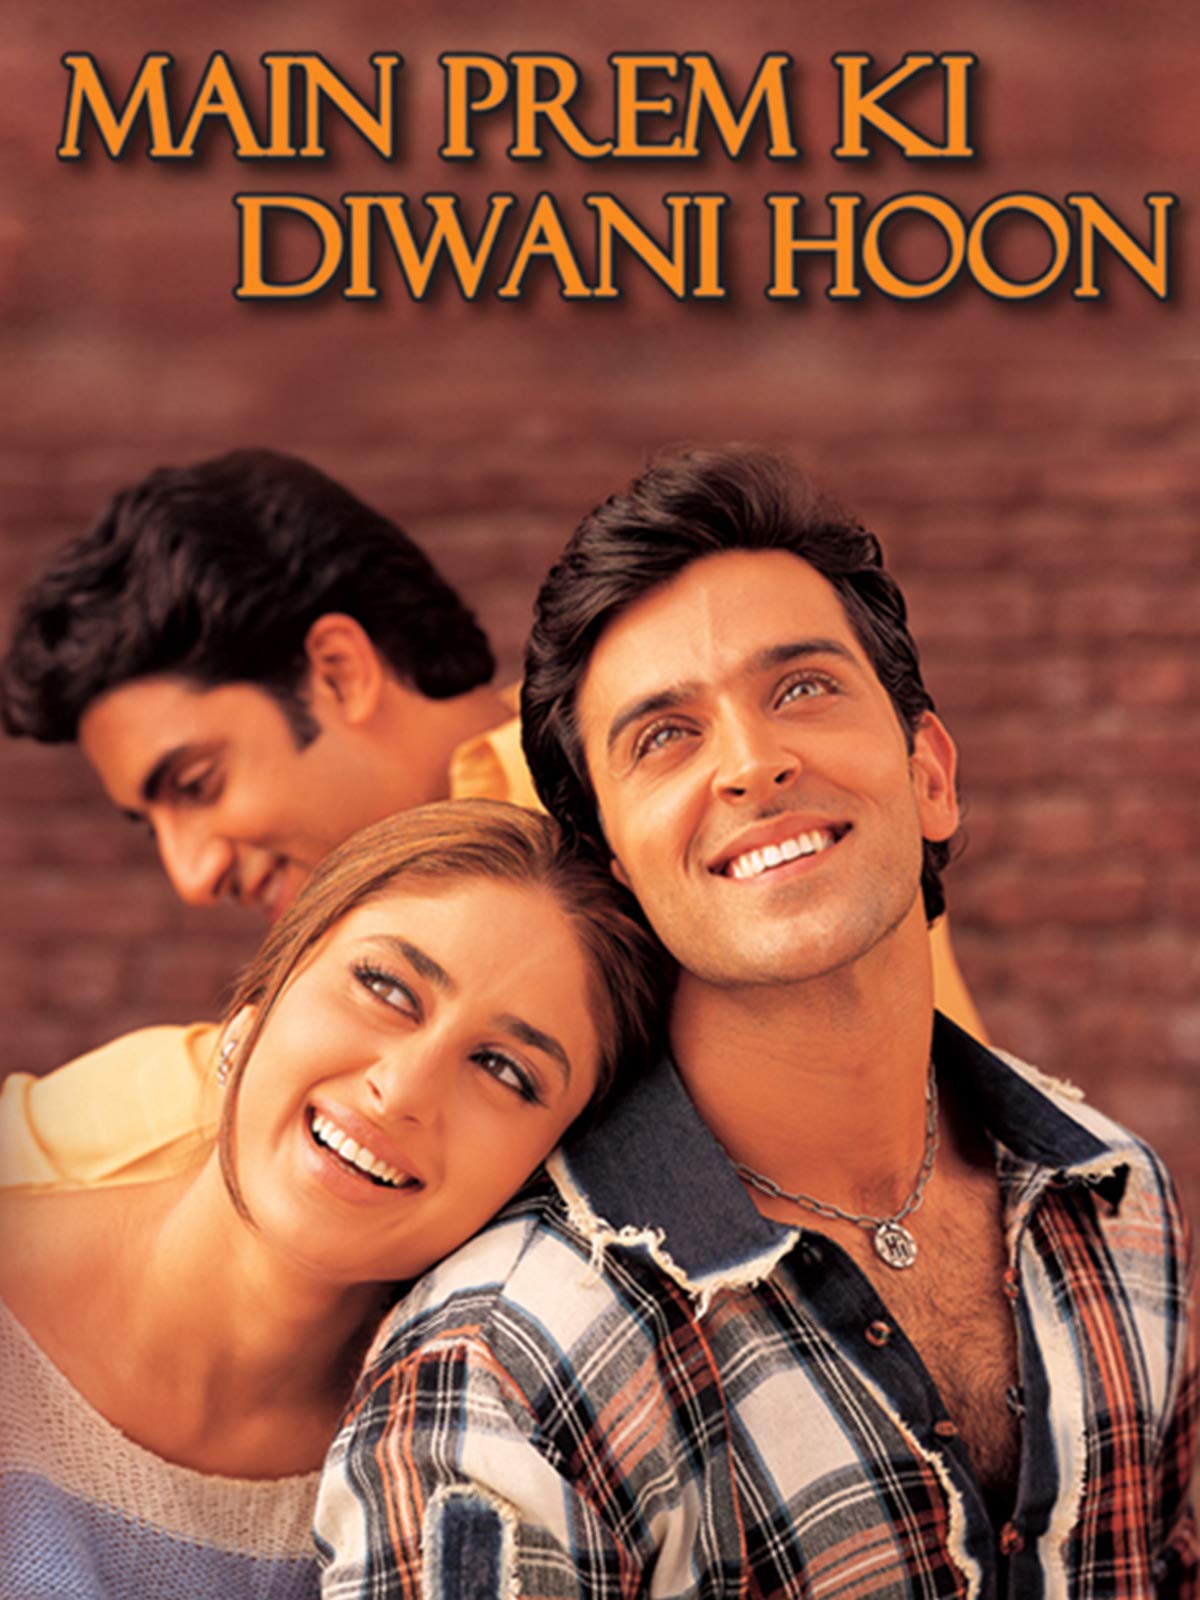 Main Prem Ki Diwani Hoon | Hindi Song Lyrics : Latest Hindi Song Lyrics,  Movie Lyrics